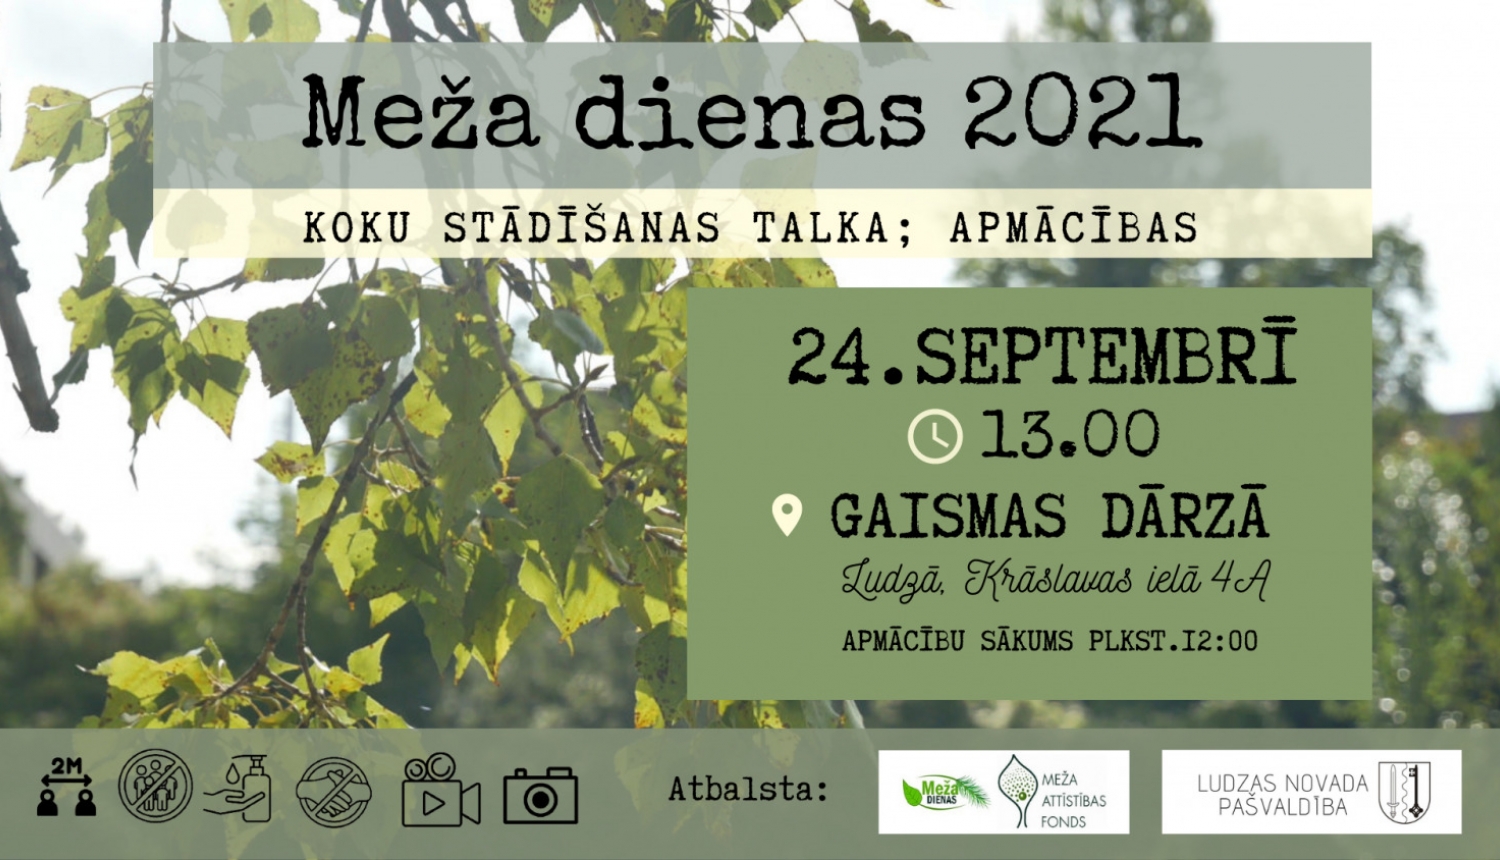 “Meža dienas 2021” ietvaros aicinām uz koku stādīšanas talku